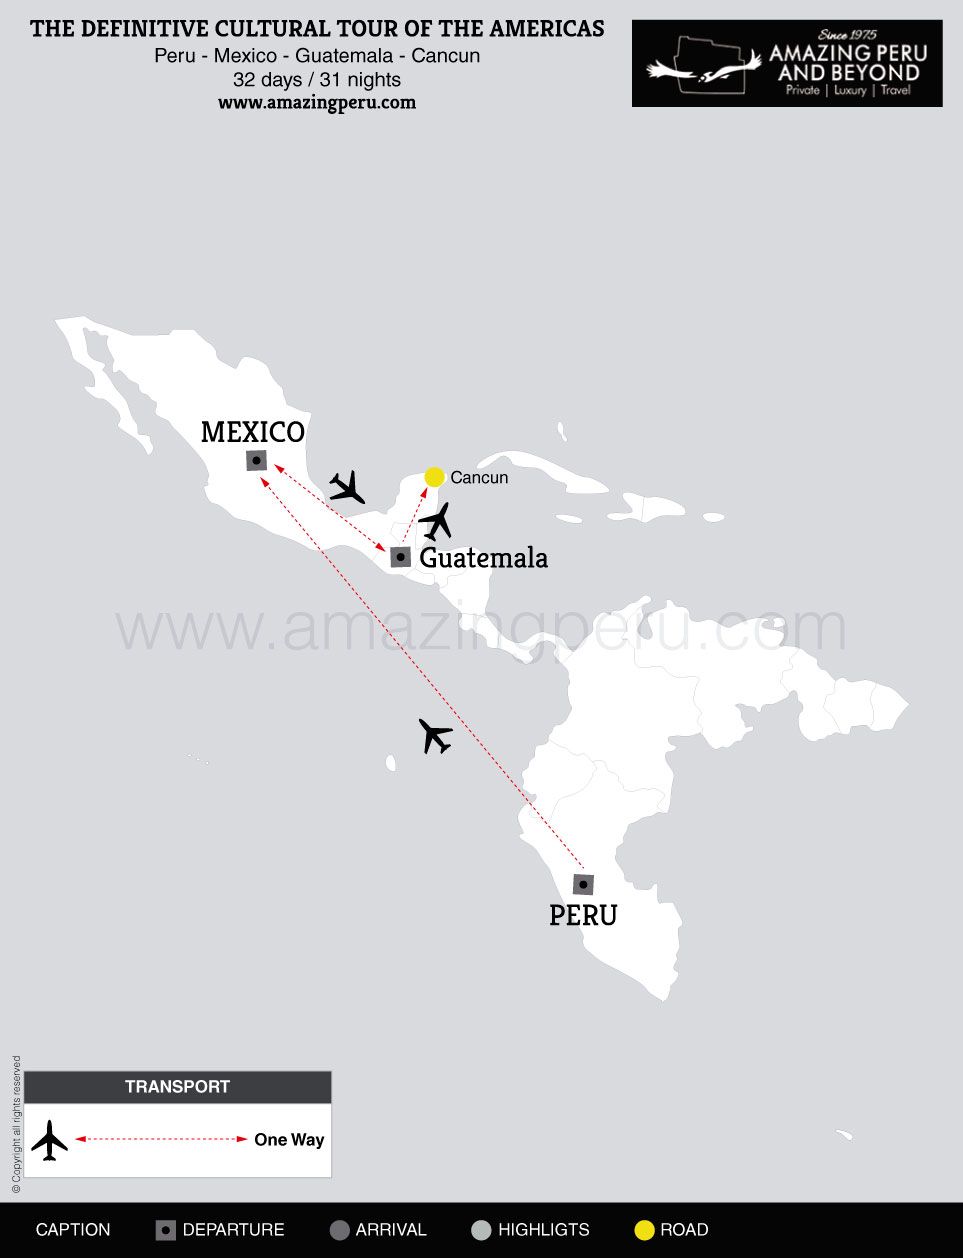 Peru - Mexico - Guatemala - Cancun